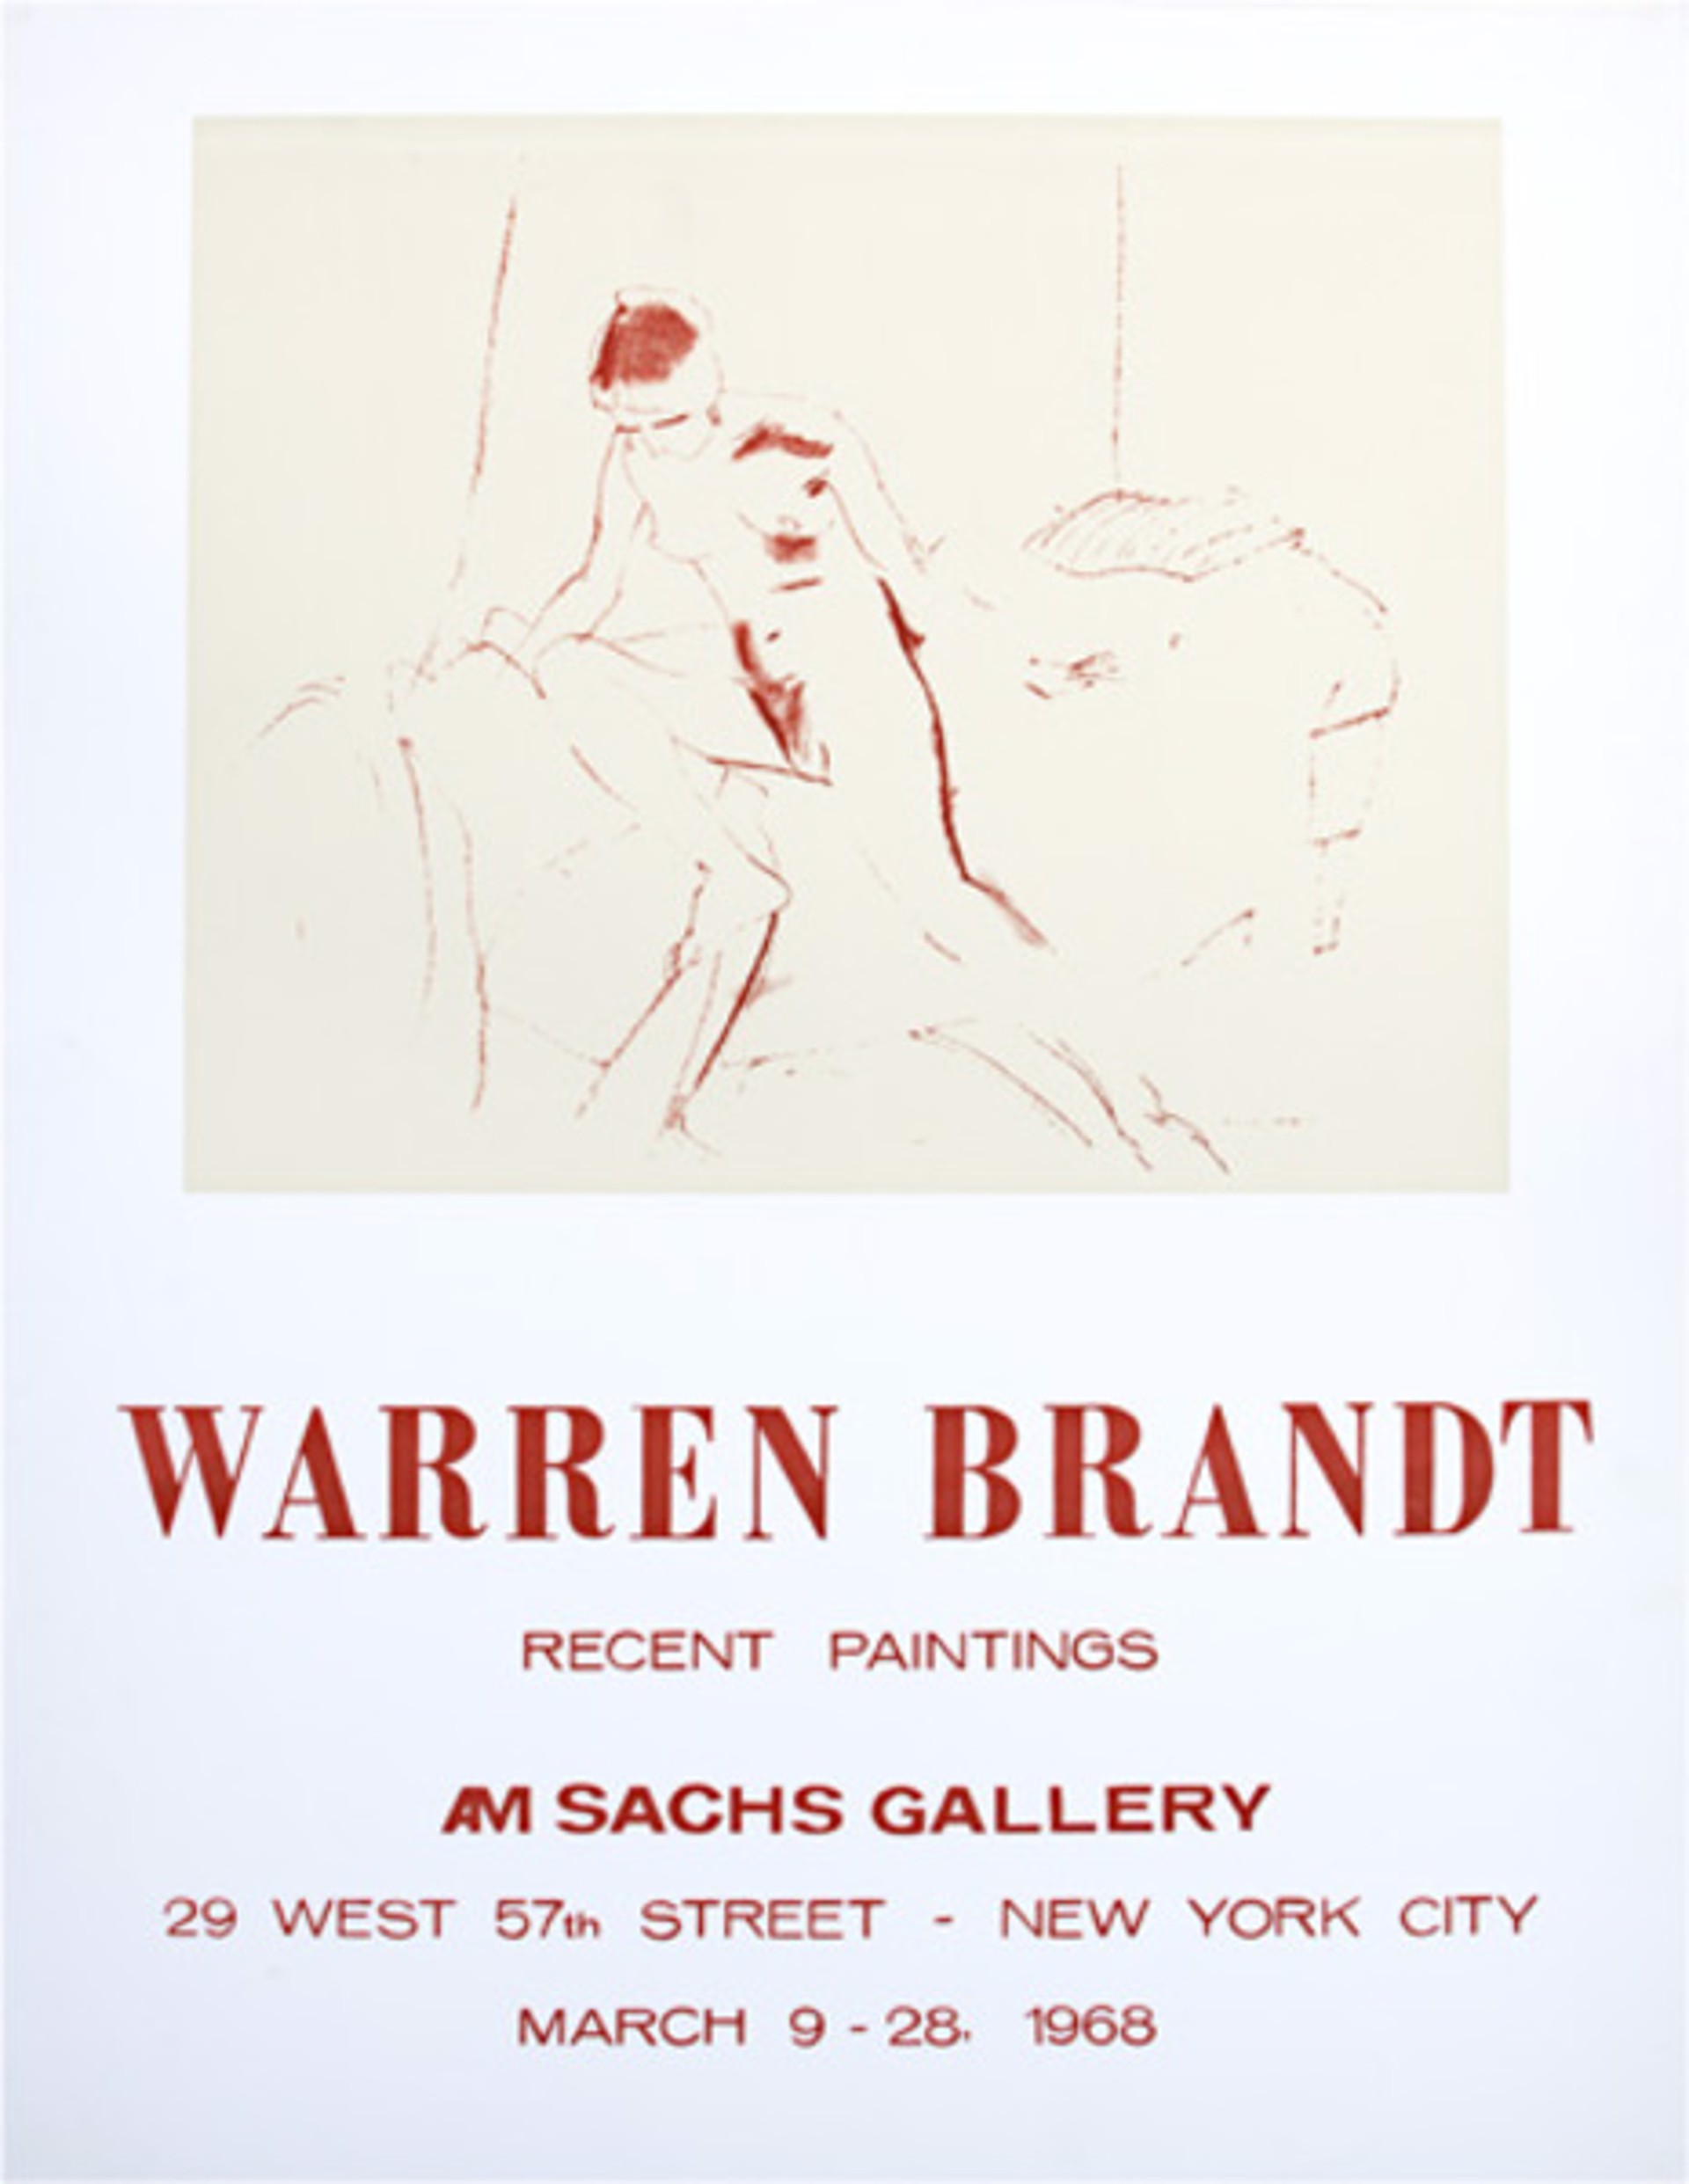 A.M. Sachs Gallery by Warren Brandt